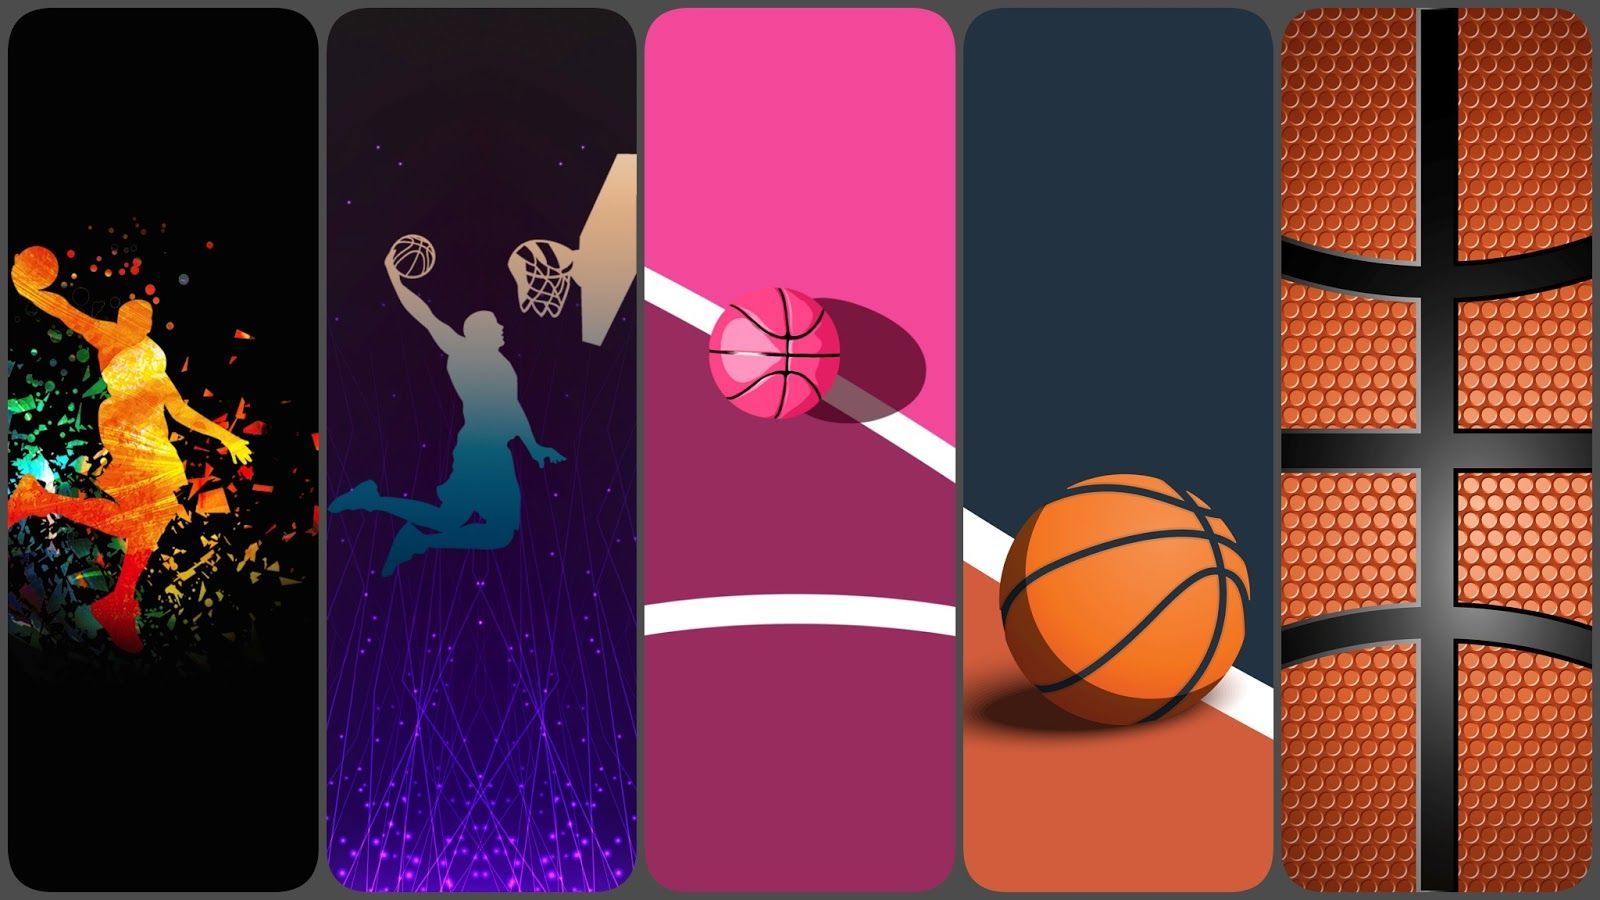 Basketball wallpaper for phone